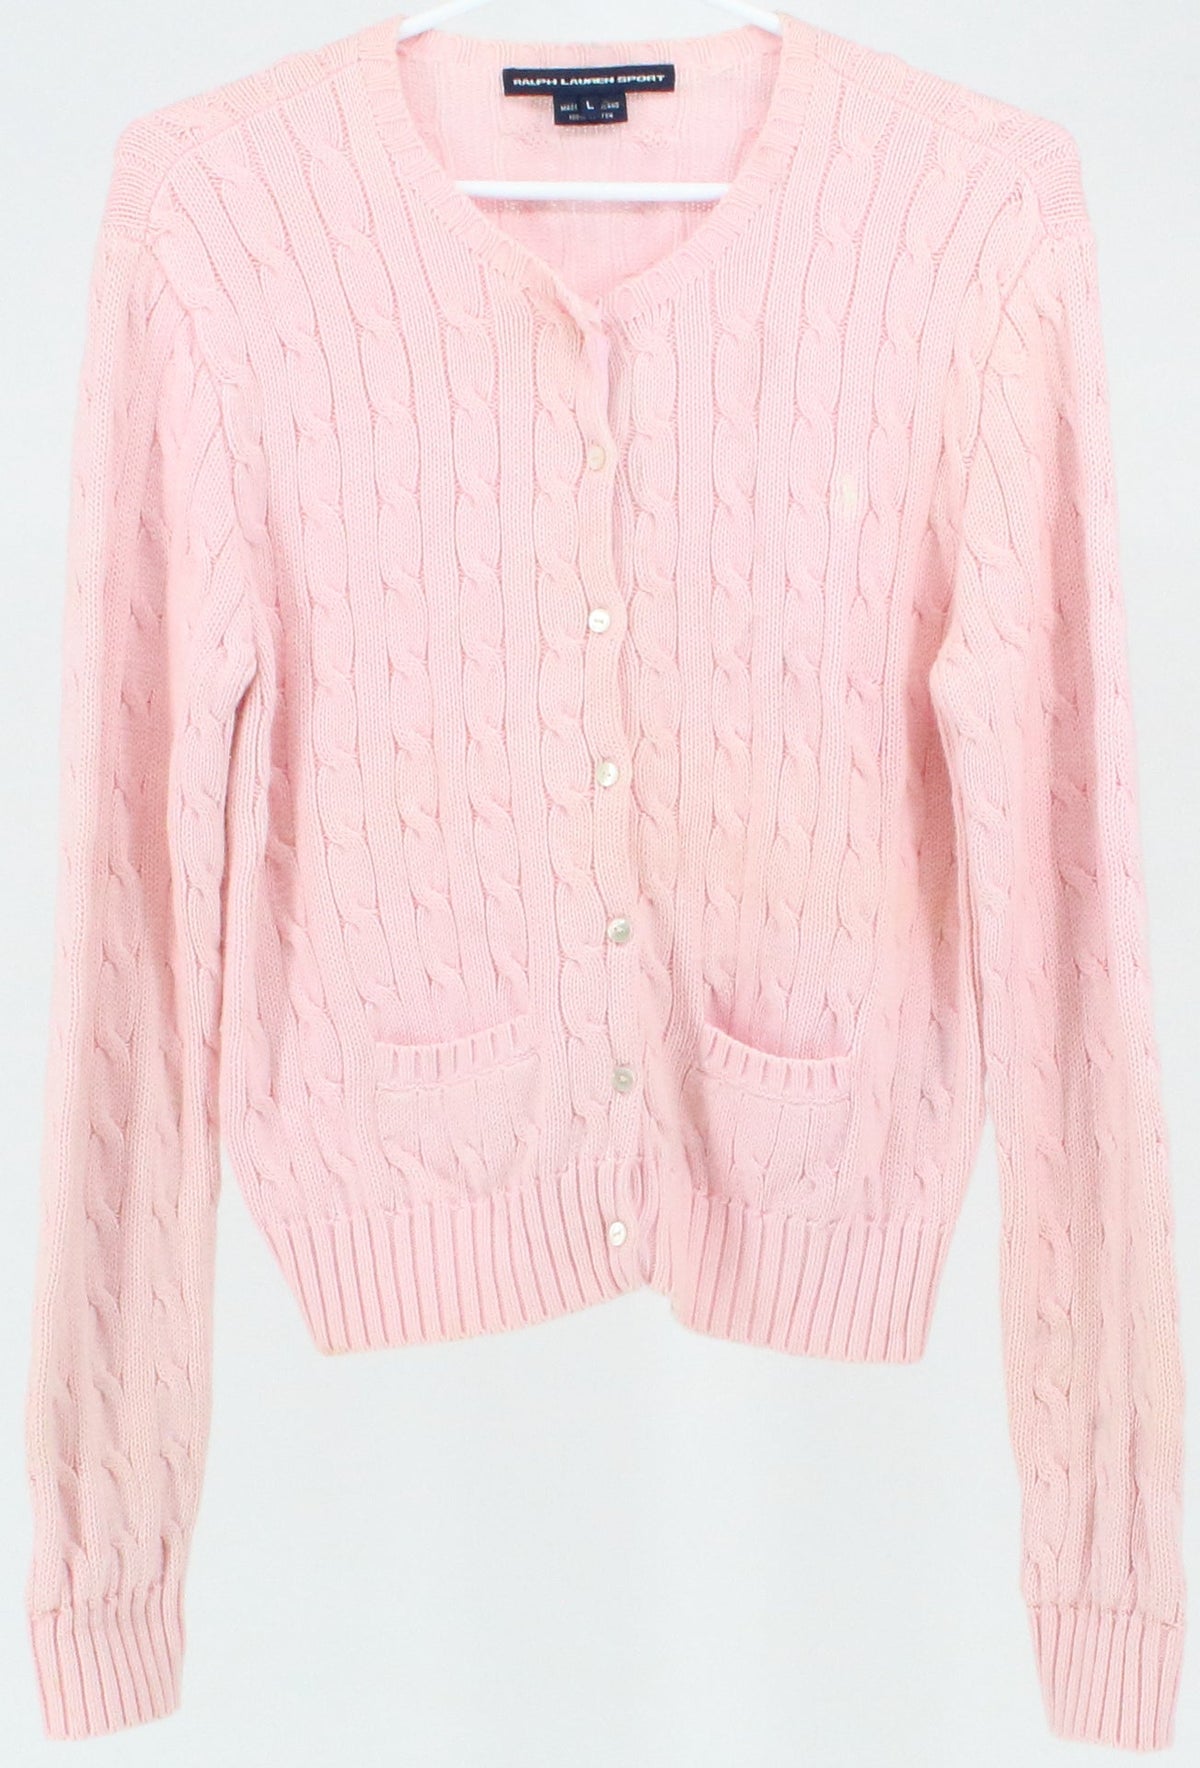 Ralph Lauren Sport Light Pink Women's Cardigan Sweater